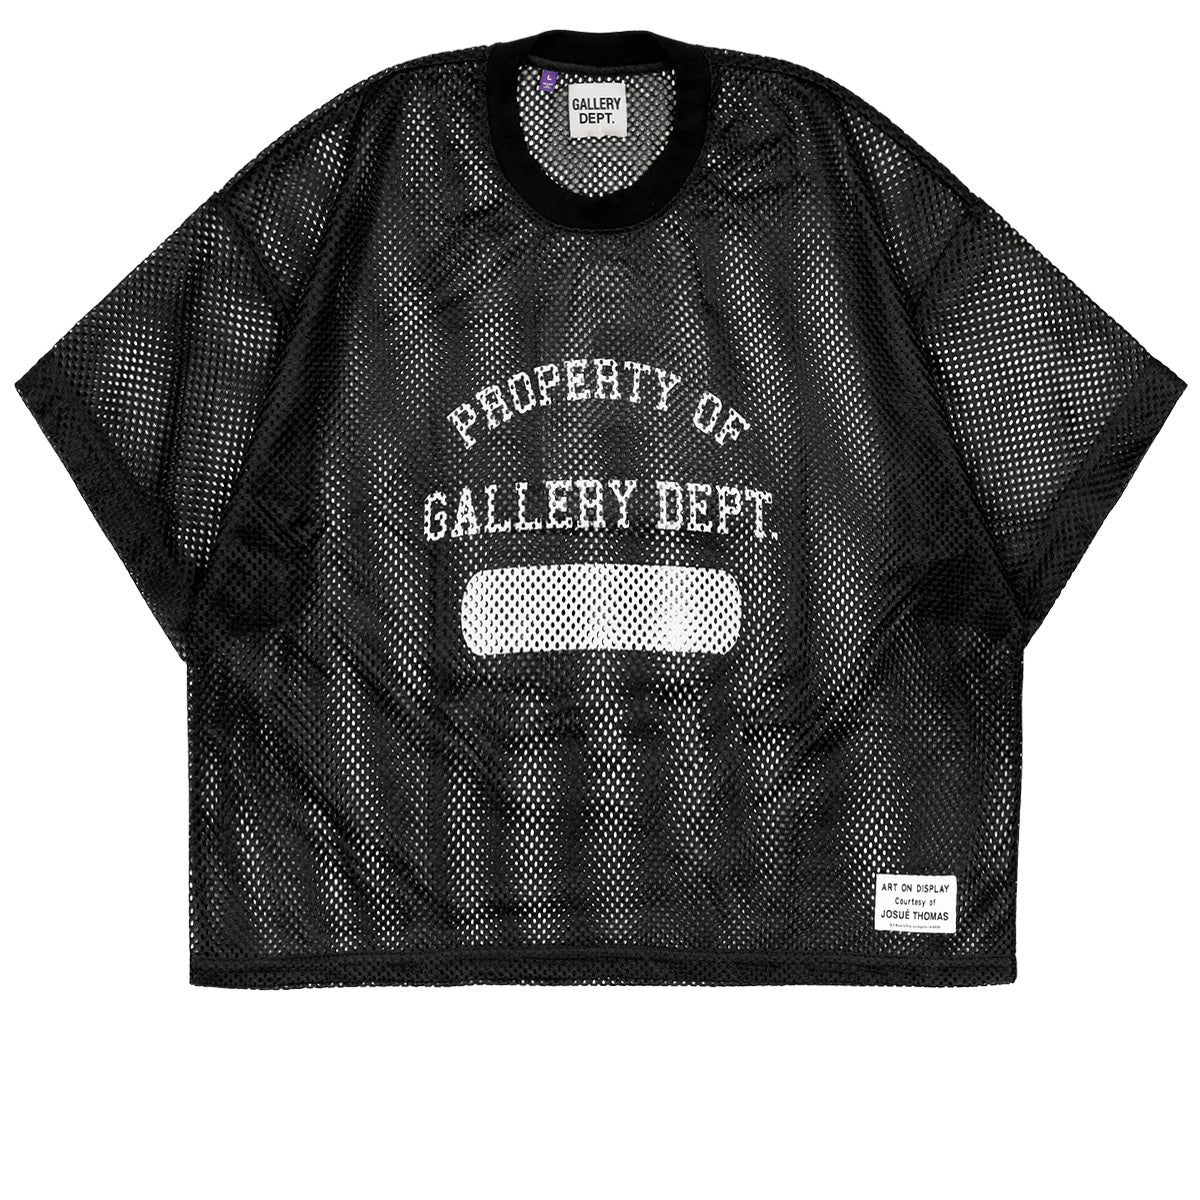 GALLERY DEPT. (ギャラリーデプト) - PRACTICE JERSEY Tシャツ 